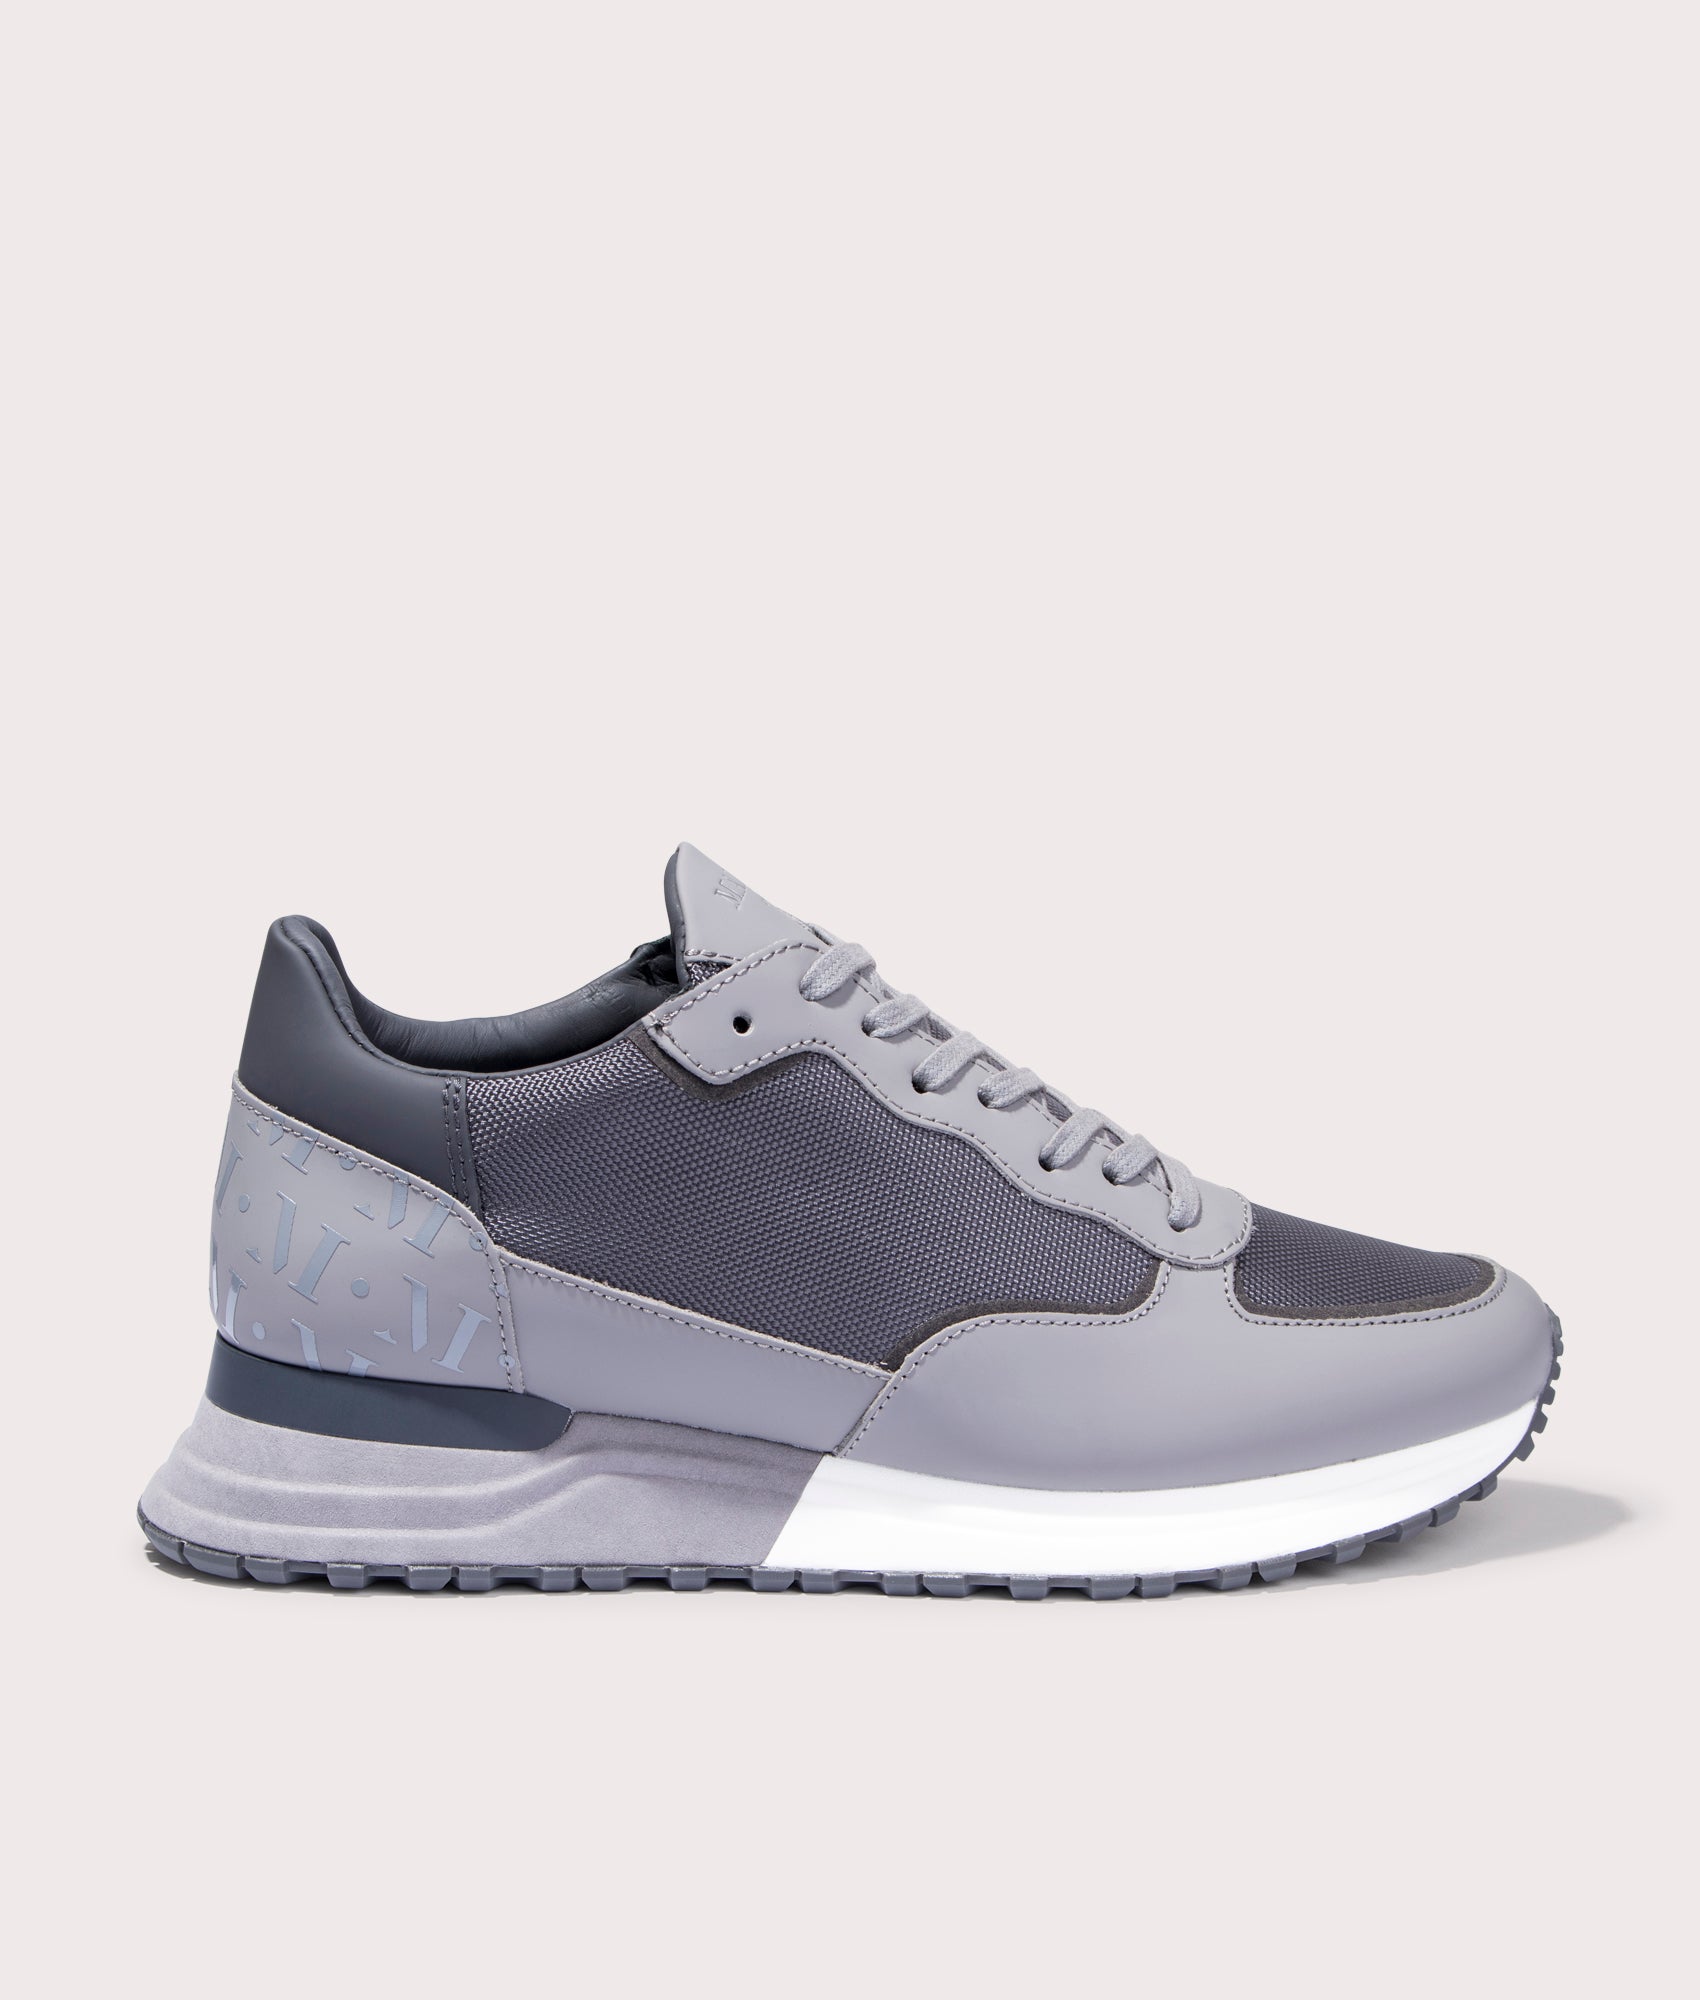 Mallet Mens Popham Sneakers - Colour: BALCNC Ballistic Concrete - Size: 10